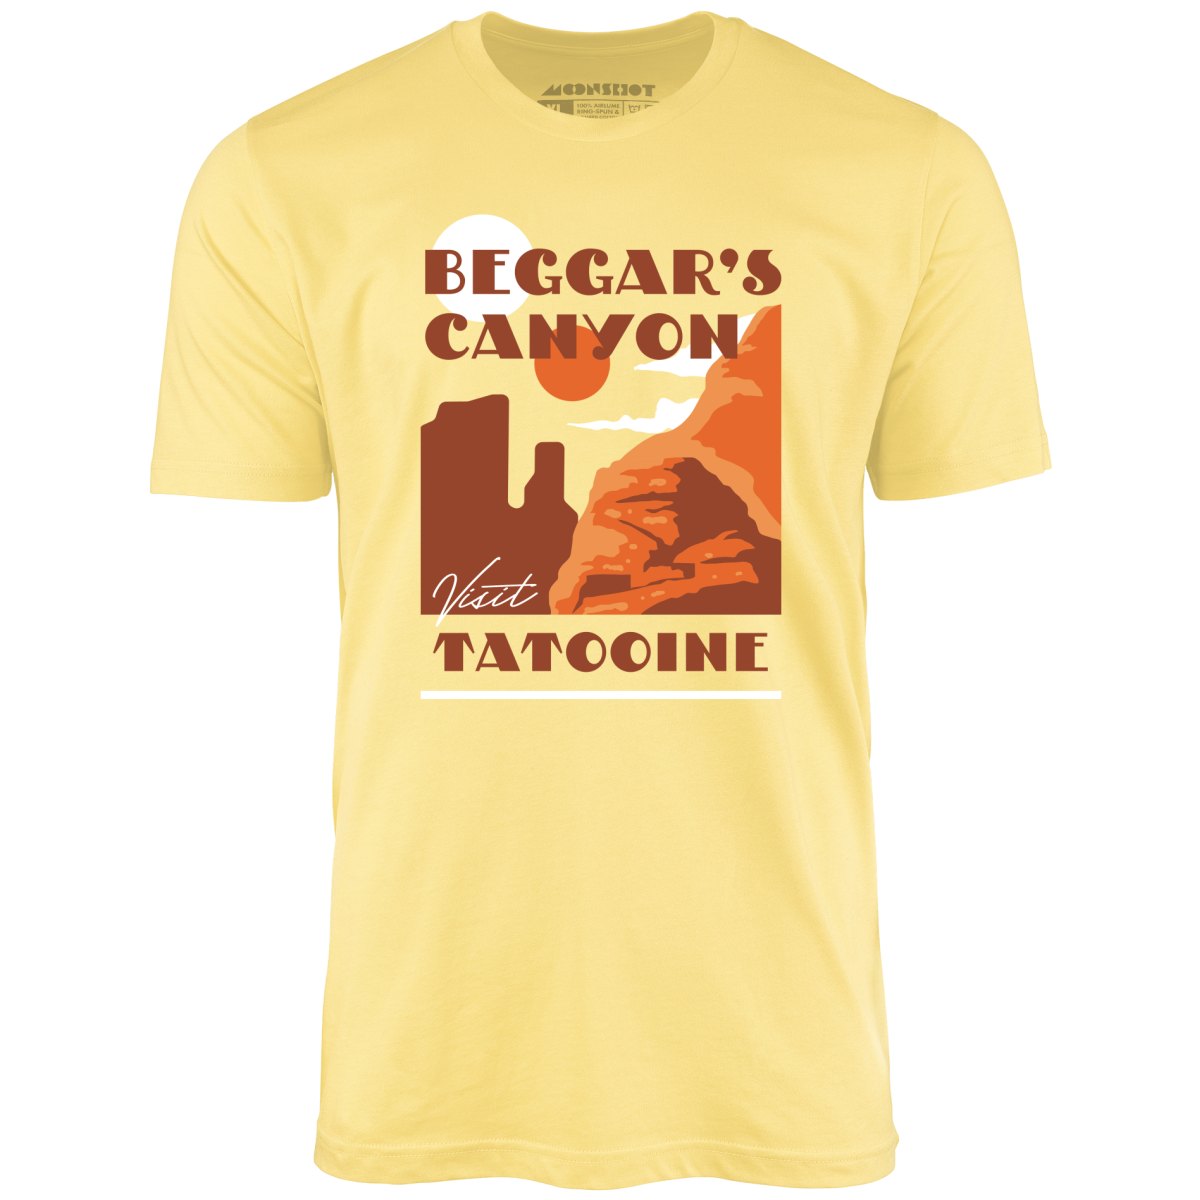 Beggar's Canyon Tatooine - Unisex T-Shirt